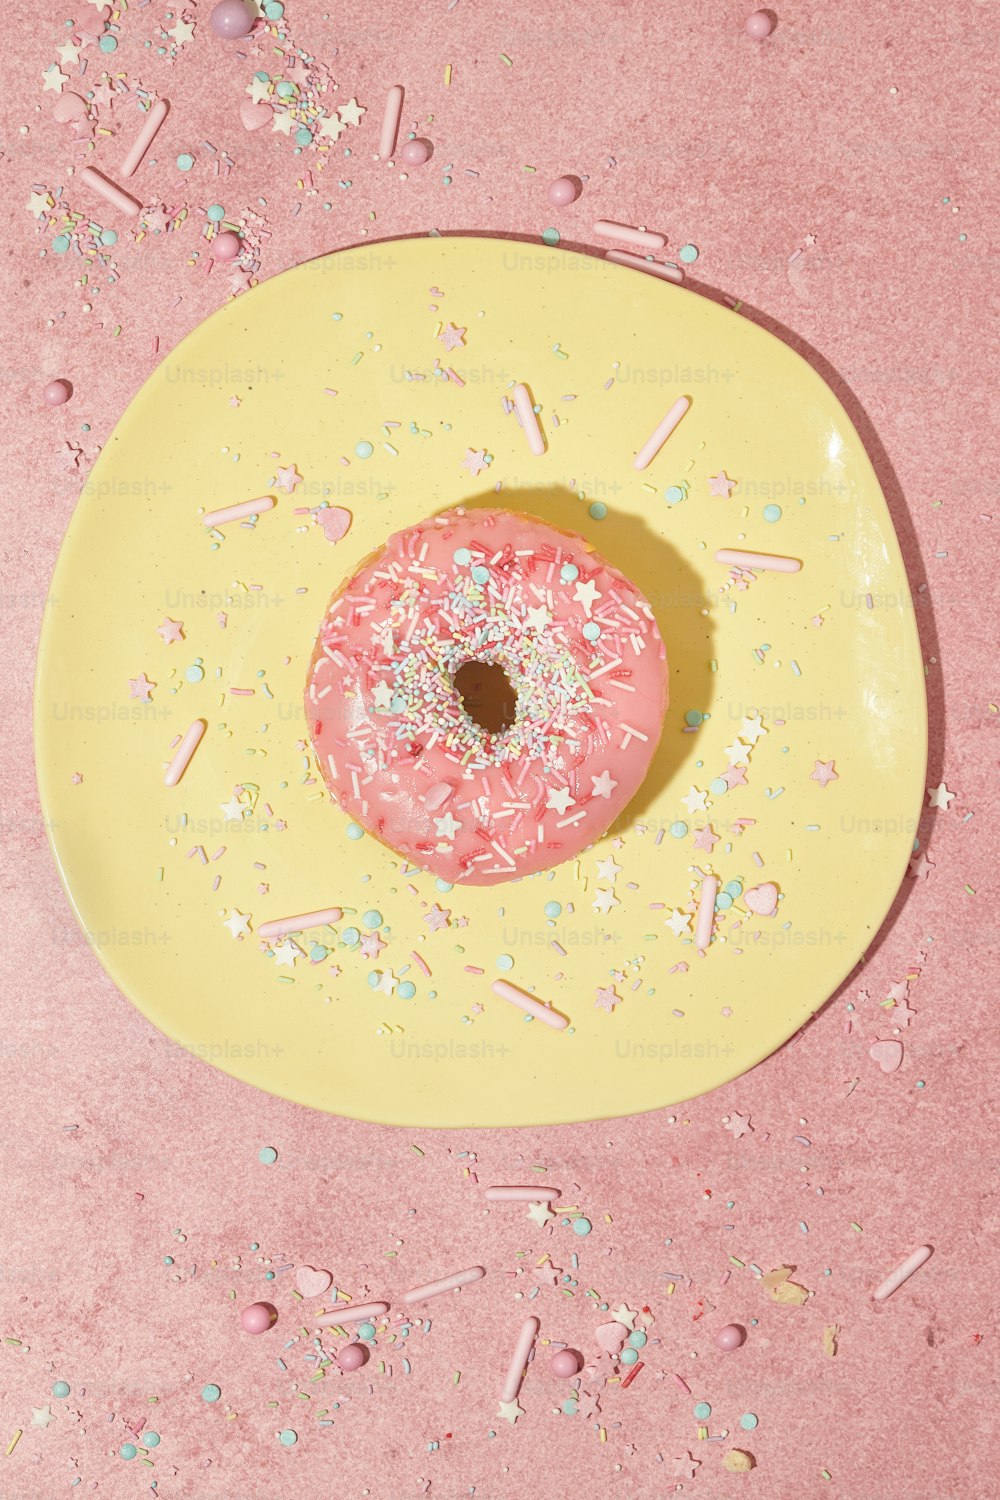 um donut rosa com polvilhos em um prato amarelo